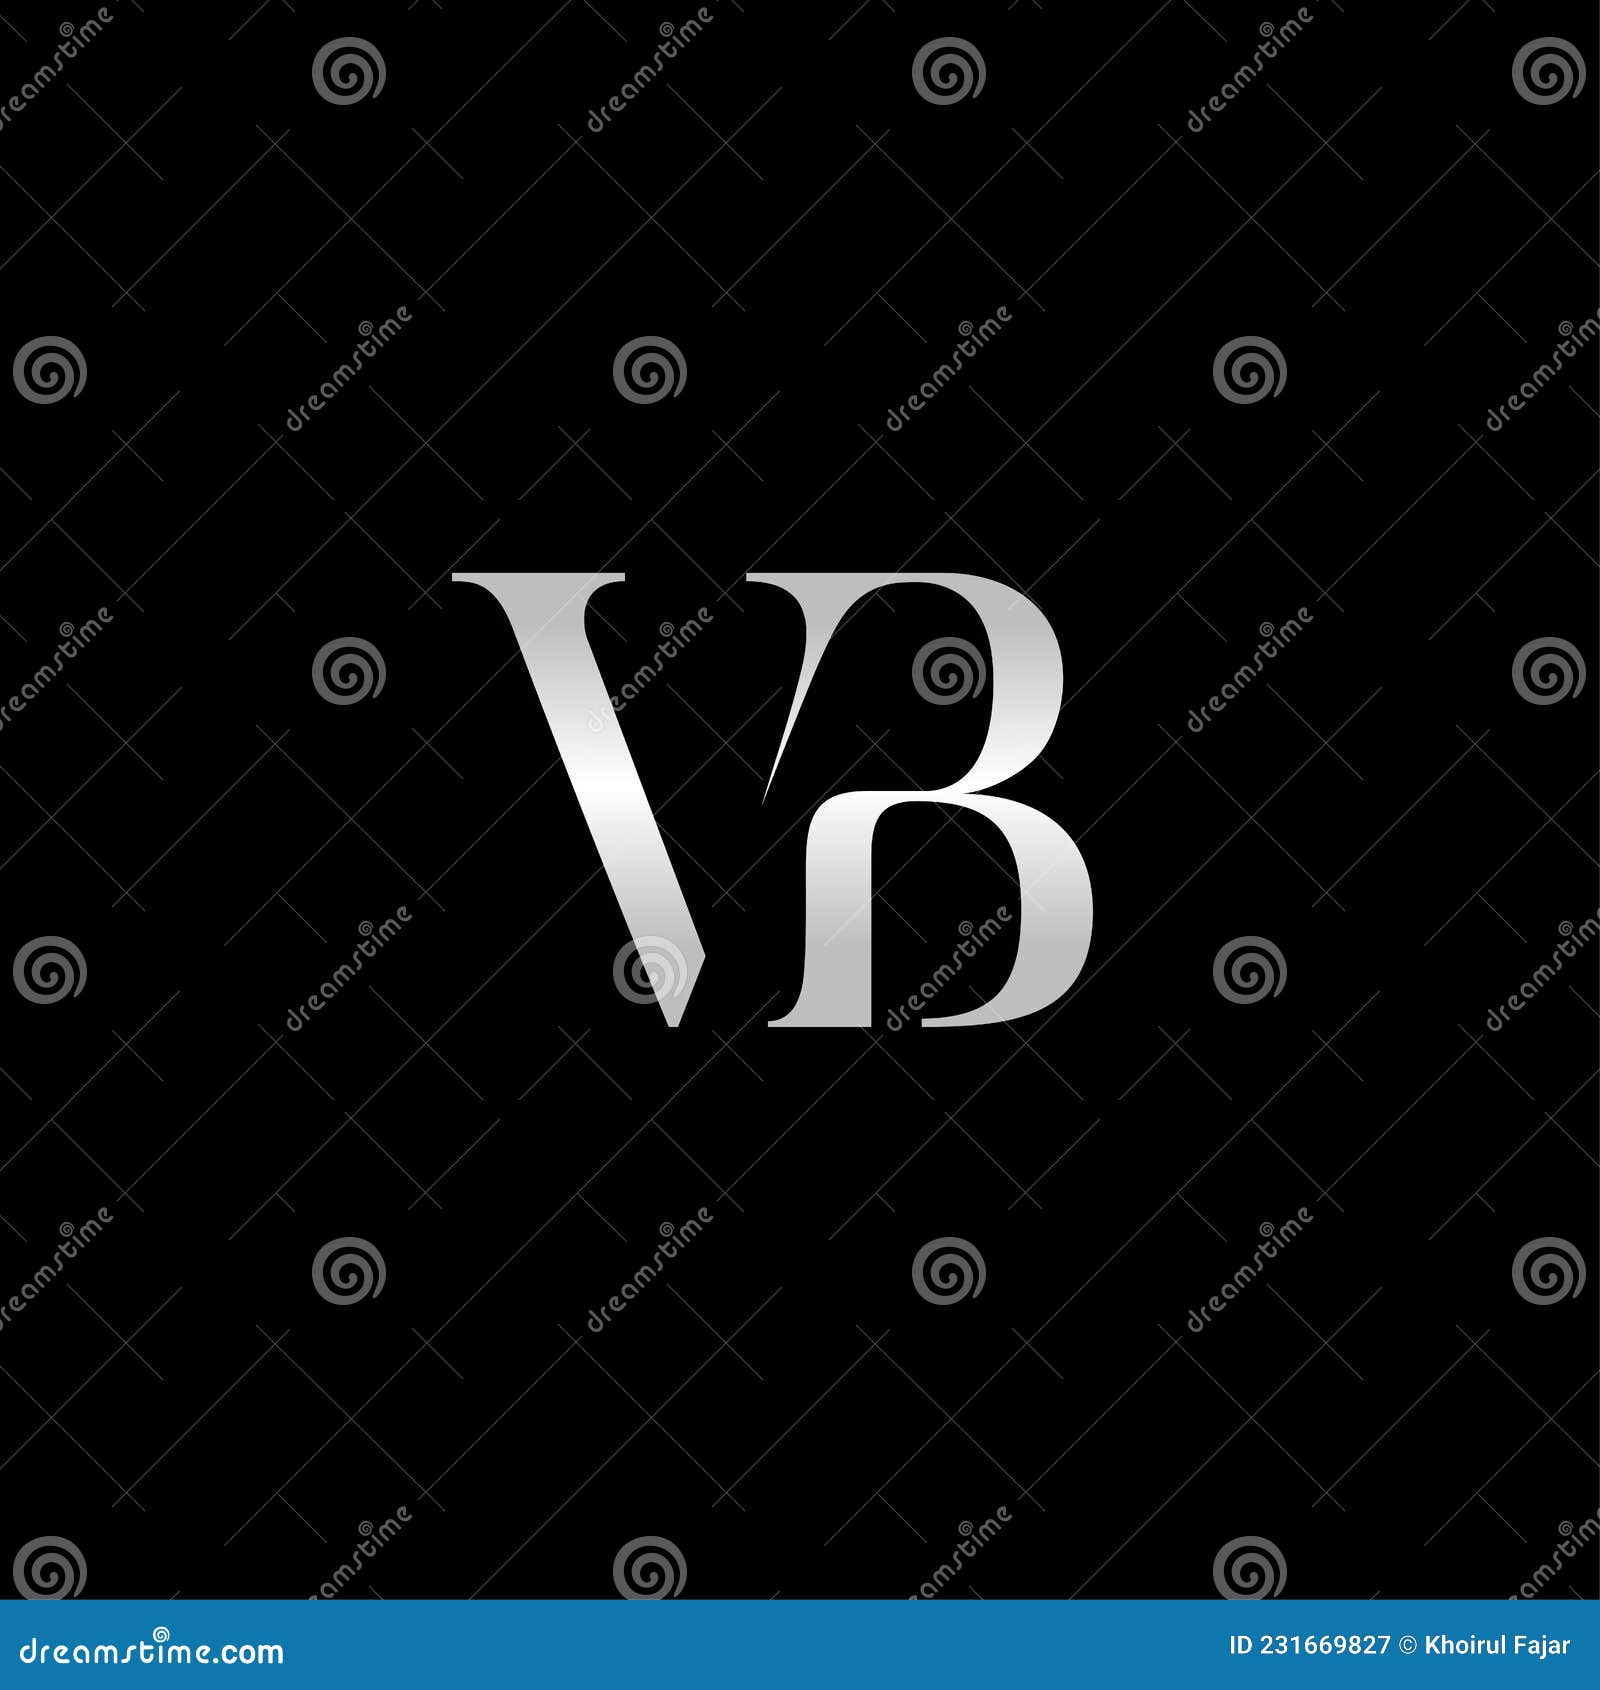 VL logo design vector template  Branding & Logo Templates ~ Creative Market